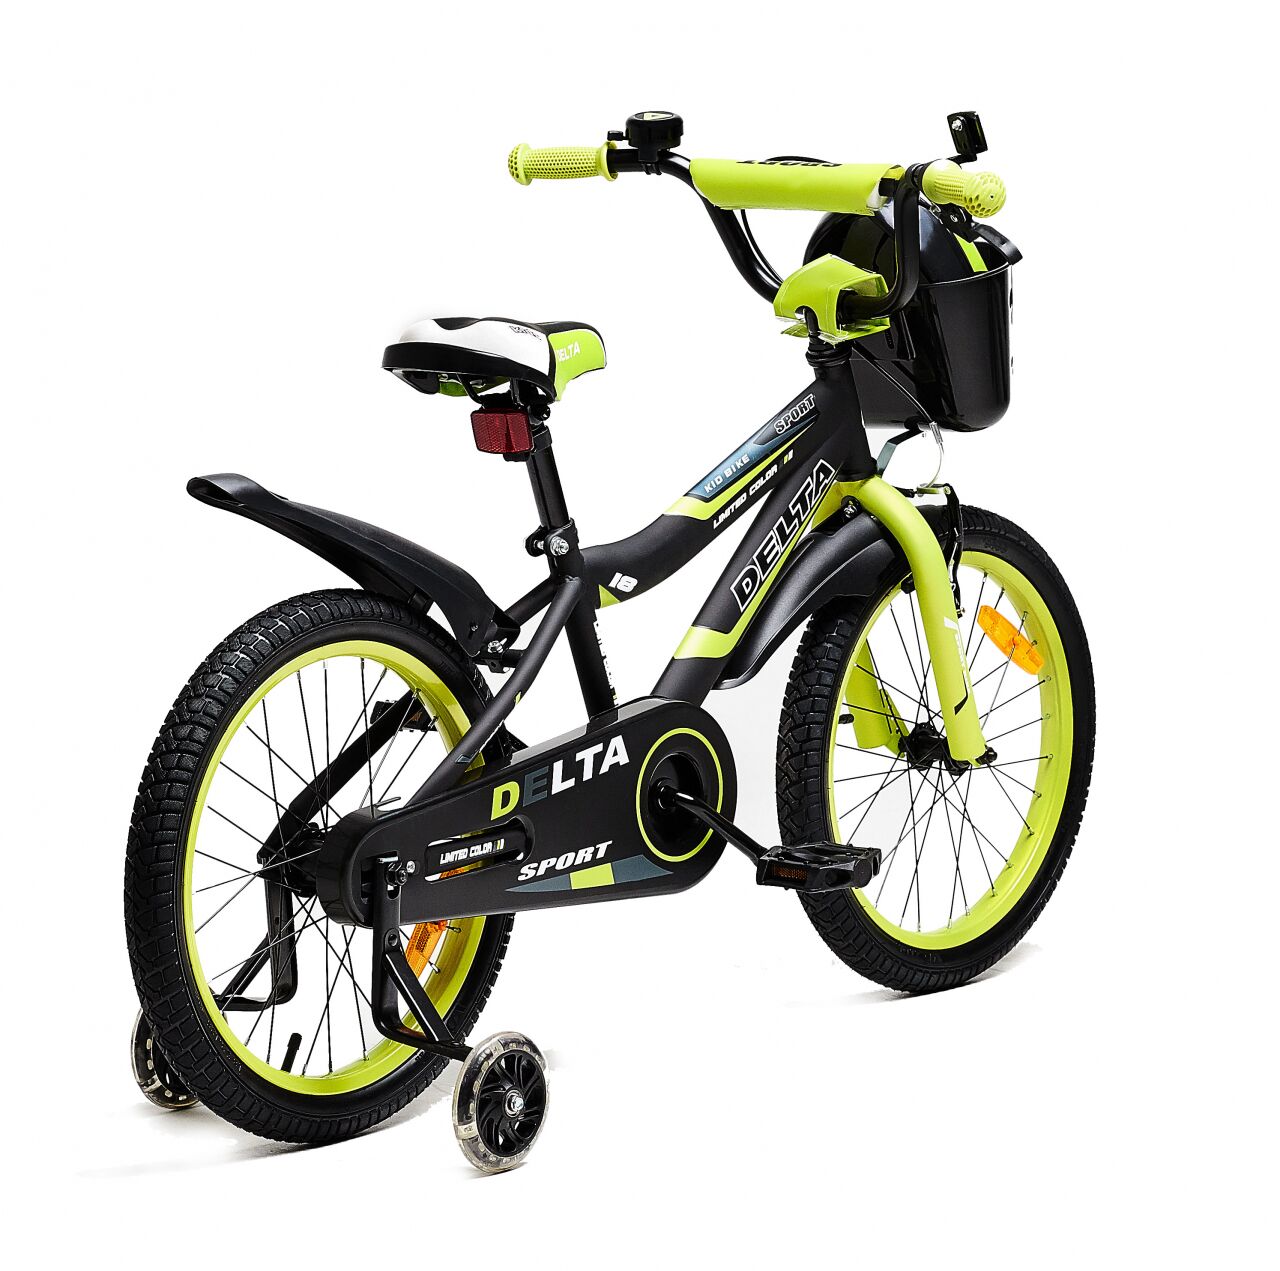 Детский велосипед DELTA Sport 16 (черный/зеленый, 2020)